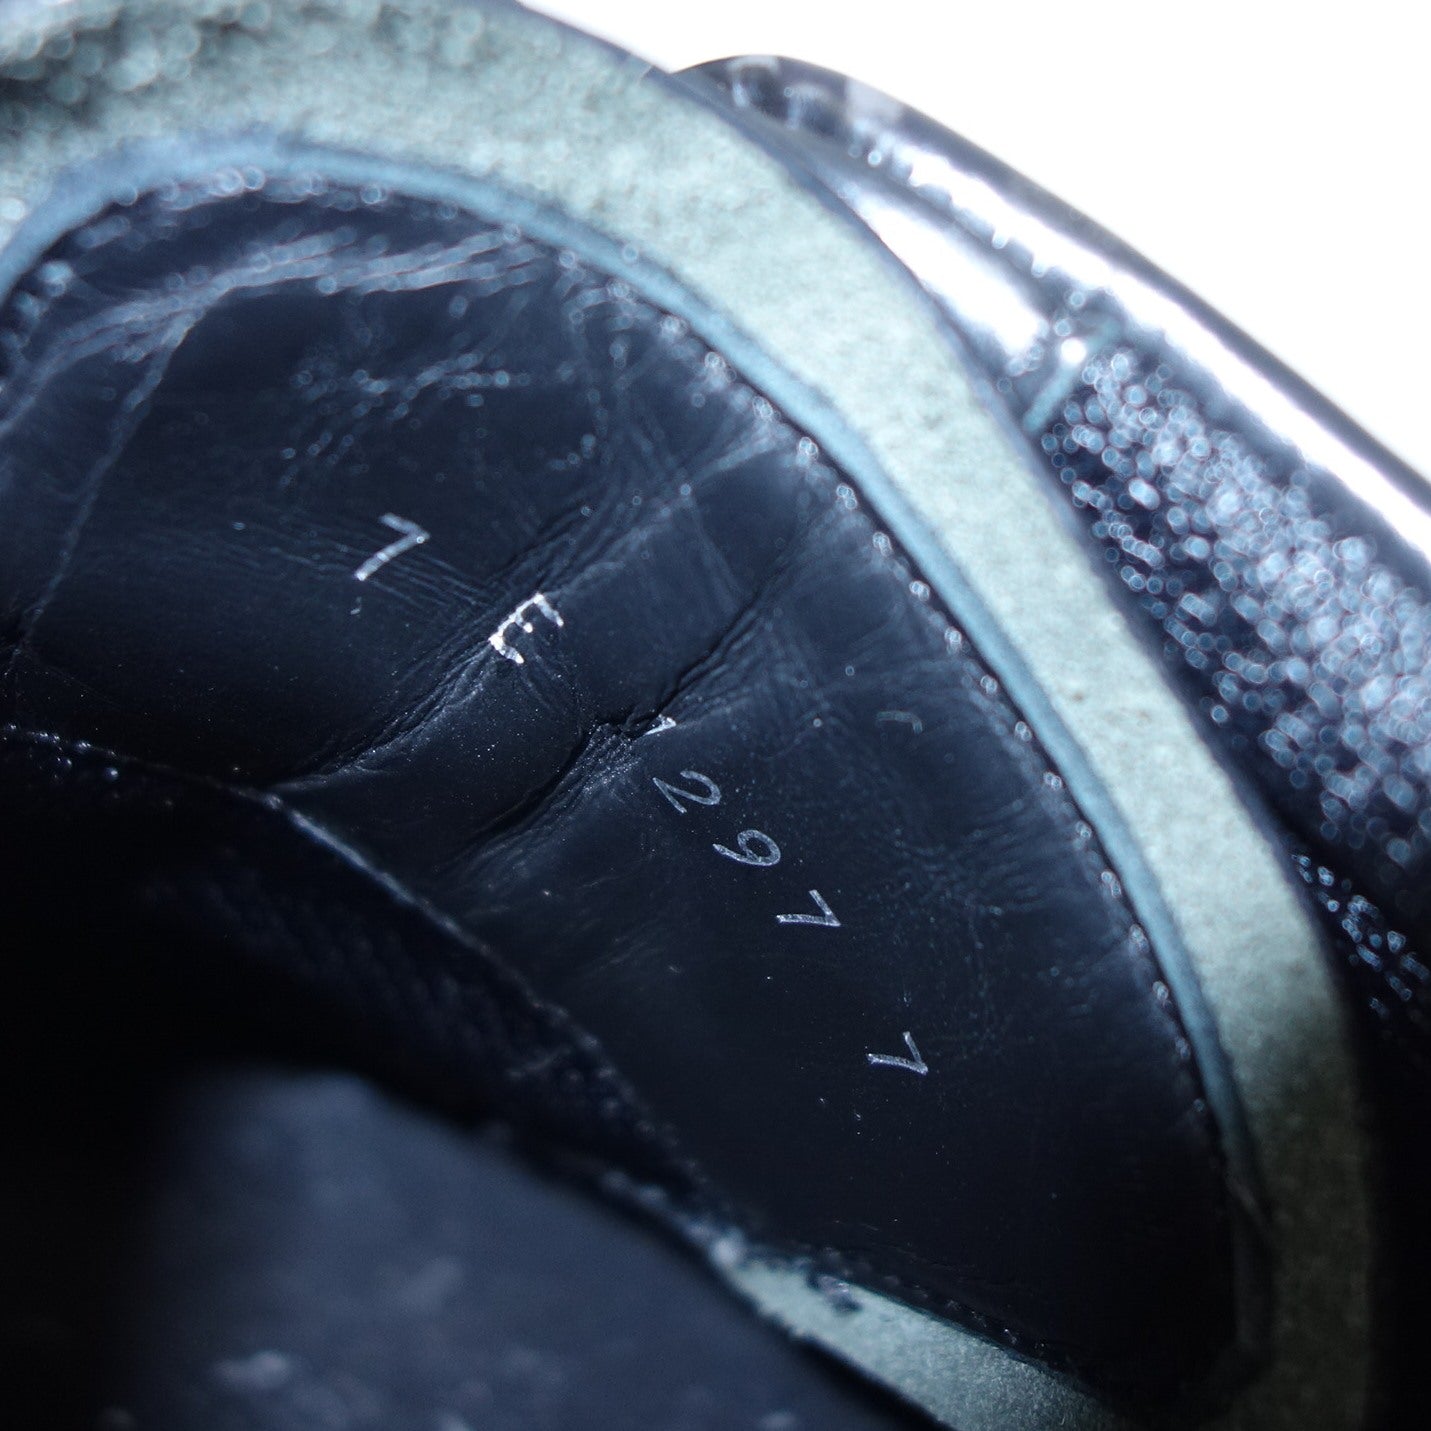 芬迪 皮革运动鞋 Zucca 1297 男式 7E 黑色 FENDI [AFC17] [二手] 